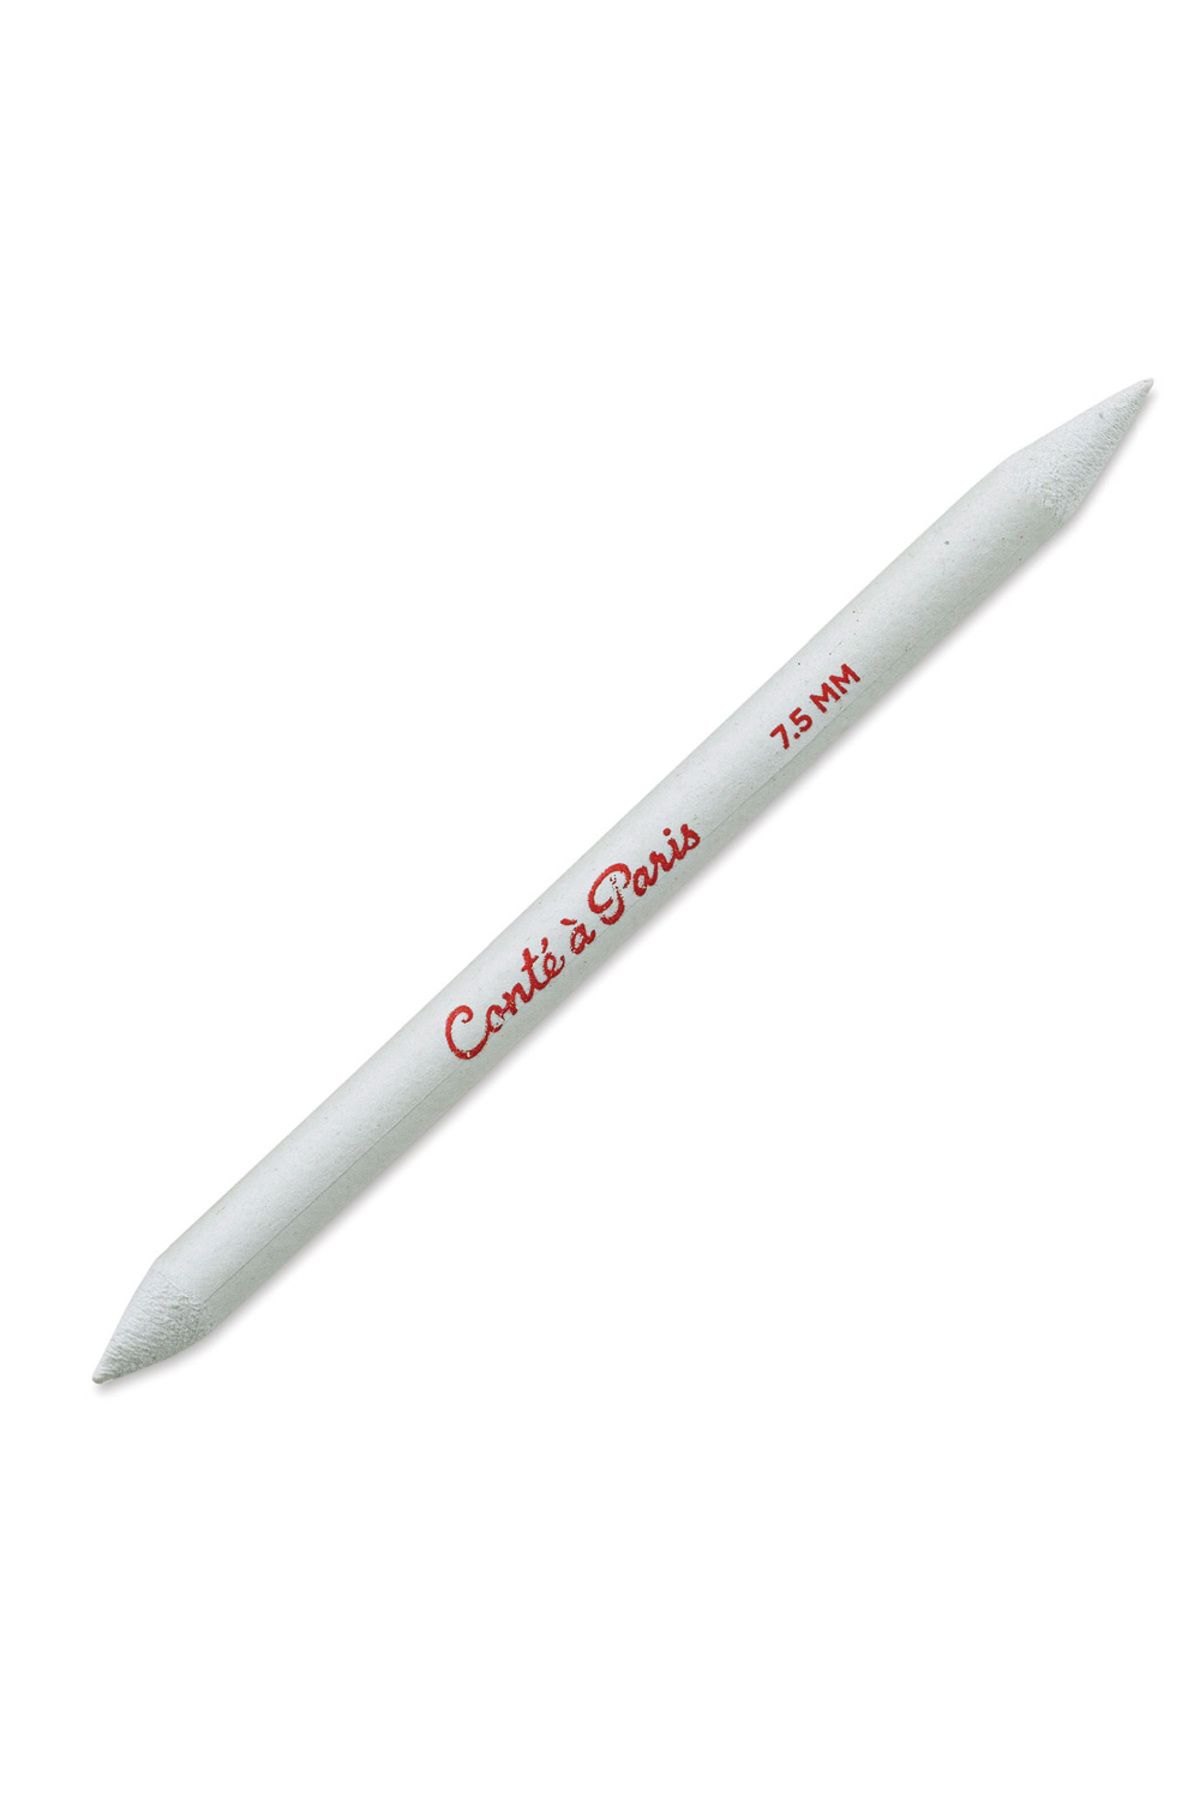 Conte a Paris Yayıcı Kağıt Kalem 129x7,5mm